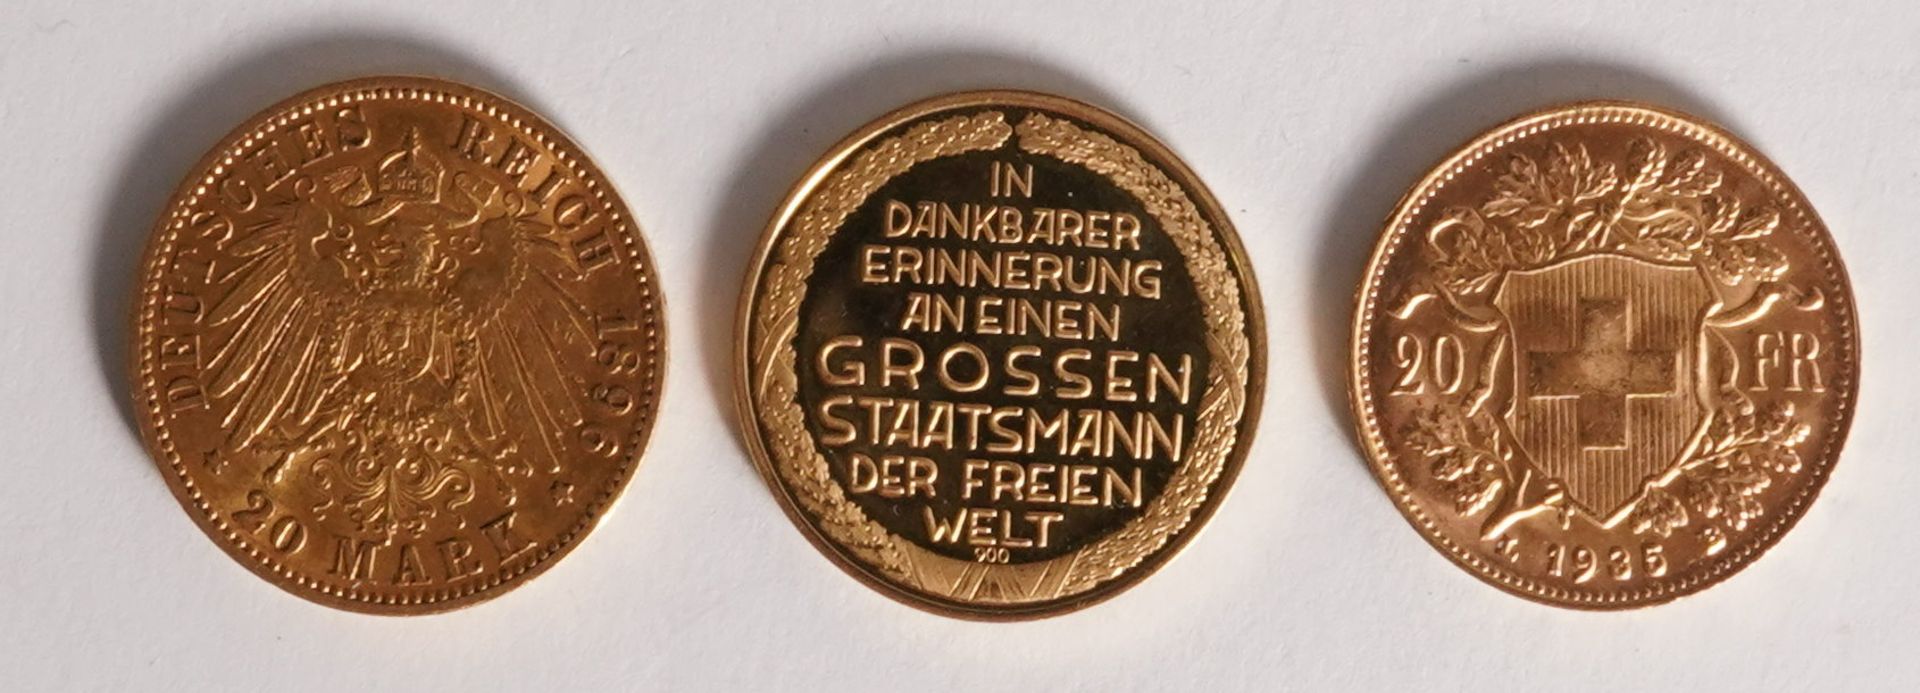 Zwei Goldmünzen und eine Medaille - Bild 2 aus 2